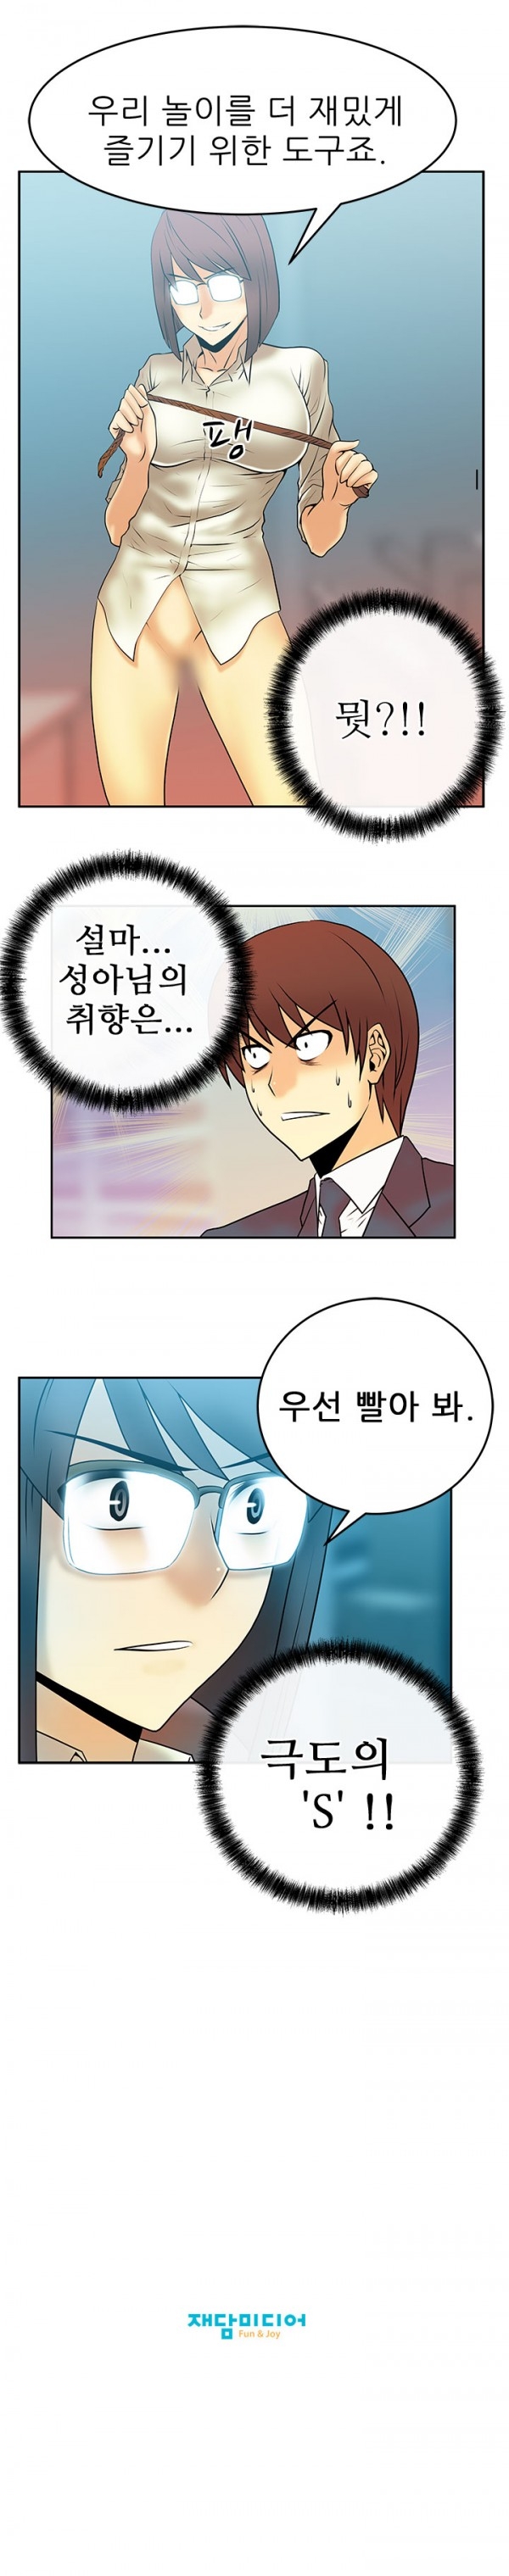 [Minu Mindu] Office Lady Vol. 1 [Korean] 146